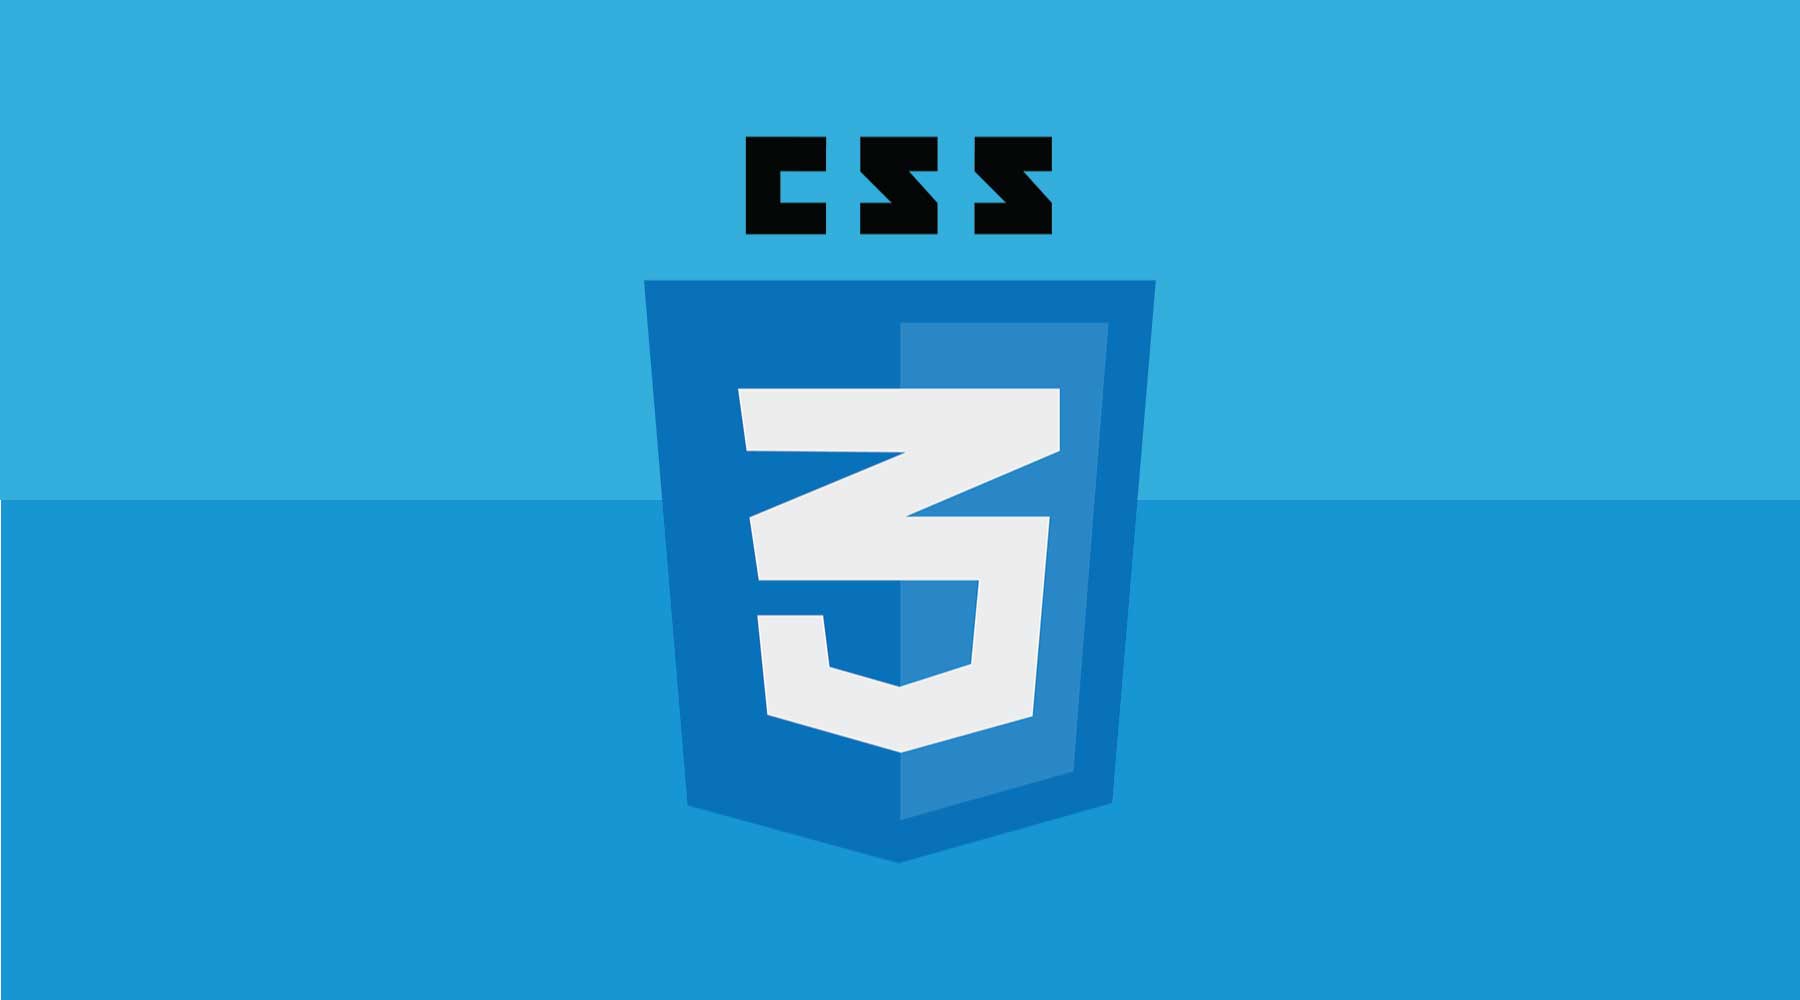 Mức độ ưu tiên khi áp dụng nhiều CSS | Học trực tuyến CNTT, học lập trình  từ cơ bản đến nâng cao